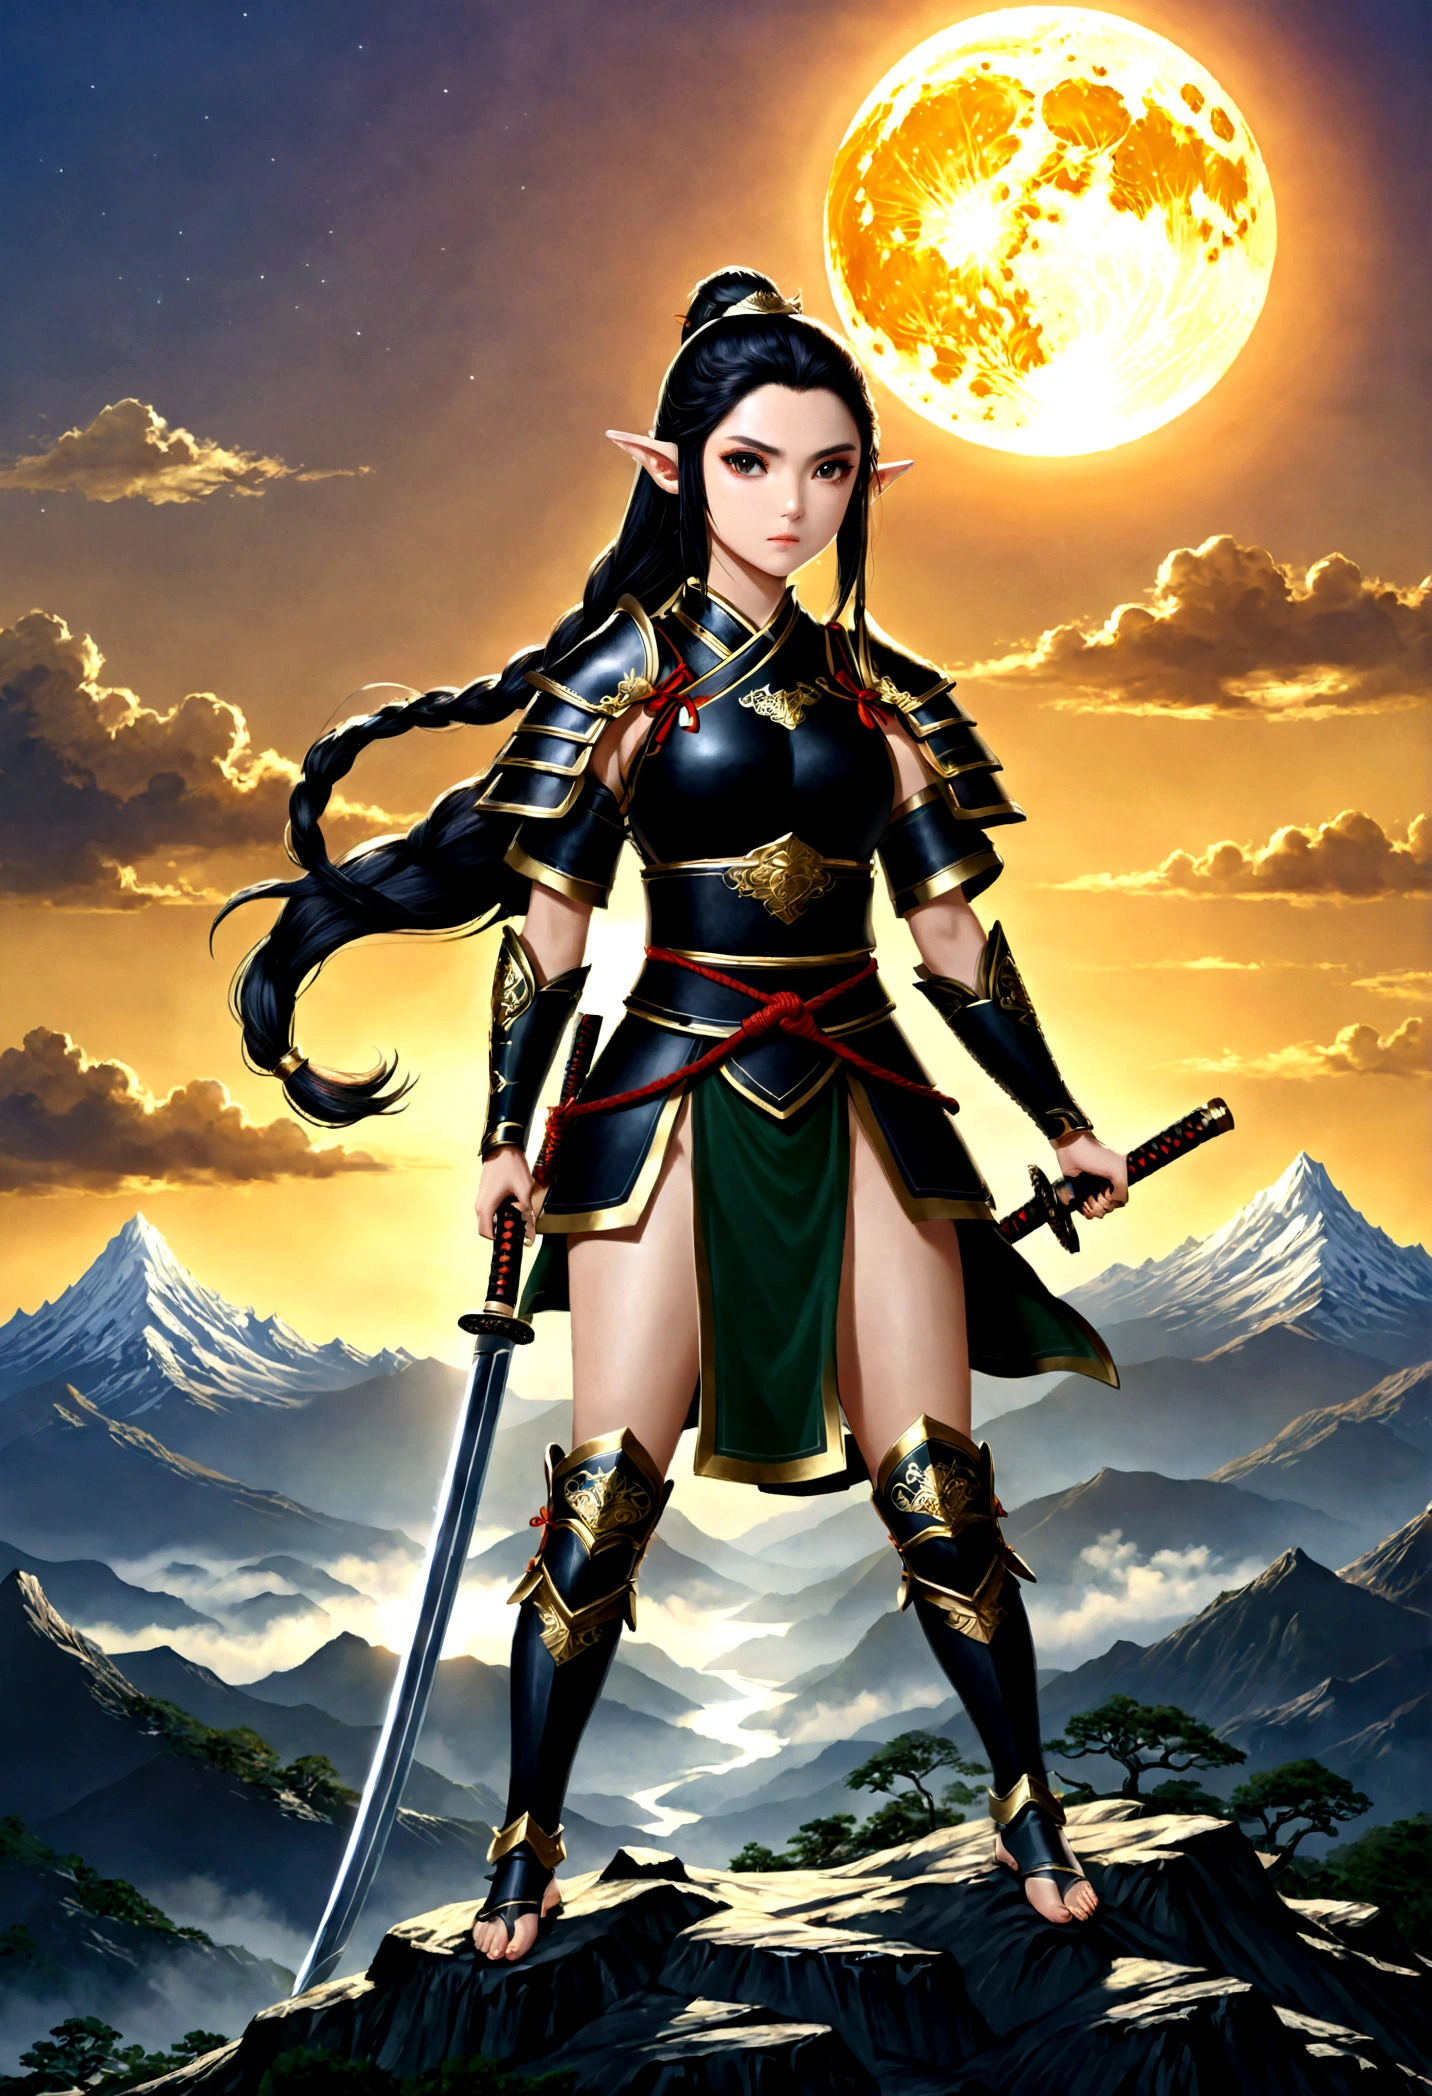 art fantastique, Art du RPG, dark art fantastique, une femme samouraï elfe, prêt à se battre, elle porte une armure de samouraï traditionnelle,  elle porte une jupe blindée, armé d&#39;un katana, elle se tient au sommet de la montagne à l&#39;aube, exquise belle elfe femelle, cheveux longs, cheveux noirs, Cheveux raides, cheveux tressés, Yeux noirs, yeux intenses, petites oreilles pointues, sommet de montagne fantastique à l&#39;aube fond, lune, étoiles, des nuages, Dieu rayons, silhouette de lumière naturelle douce, Angle dynamique, photoréalisme, Vue panoramique, ultra meilleur réaliste, meilleurs détails, 16k, [ultra détaillé], chef-d&#39;œuvre, Meilleure qualité, (extrêmement détaillé), photoréalisme, 